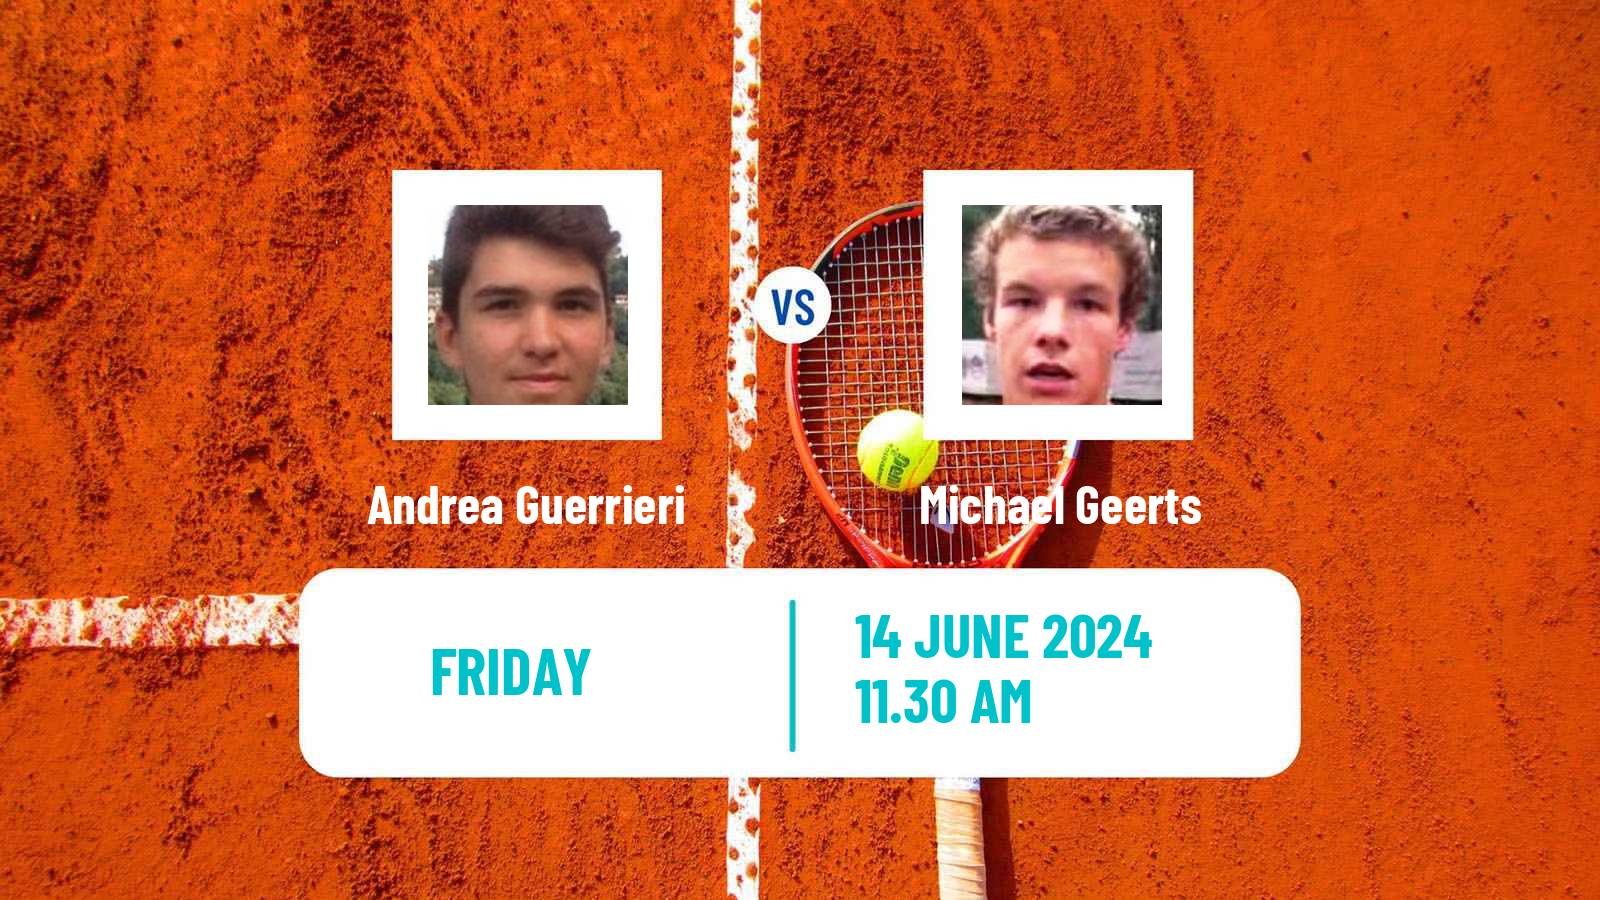 Tennis ITF M25 Martos Men Andrea Guerrieri - Michael Geerts